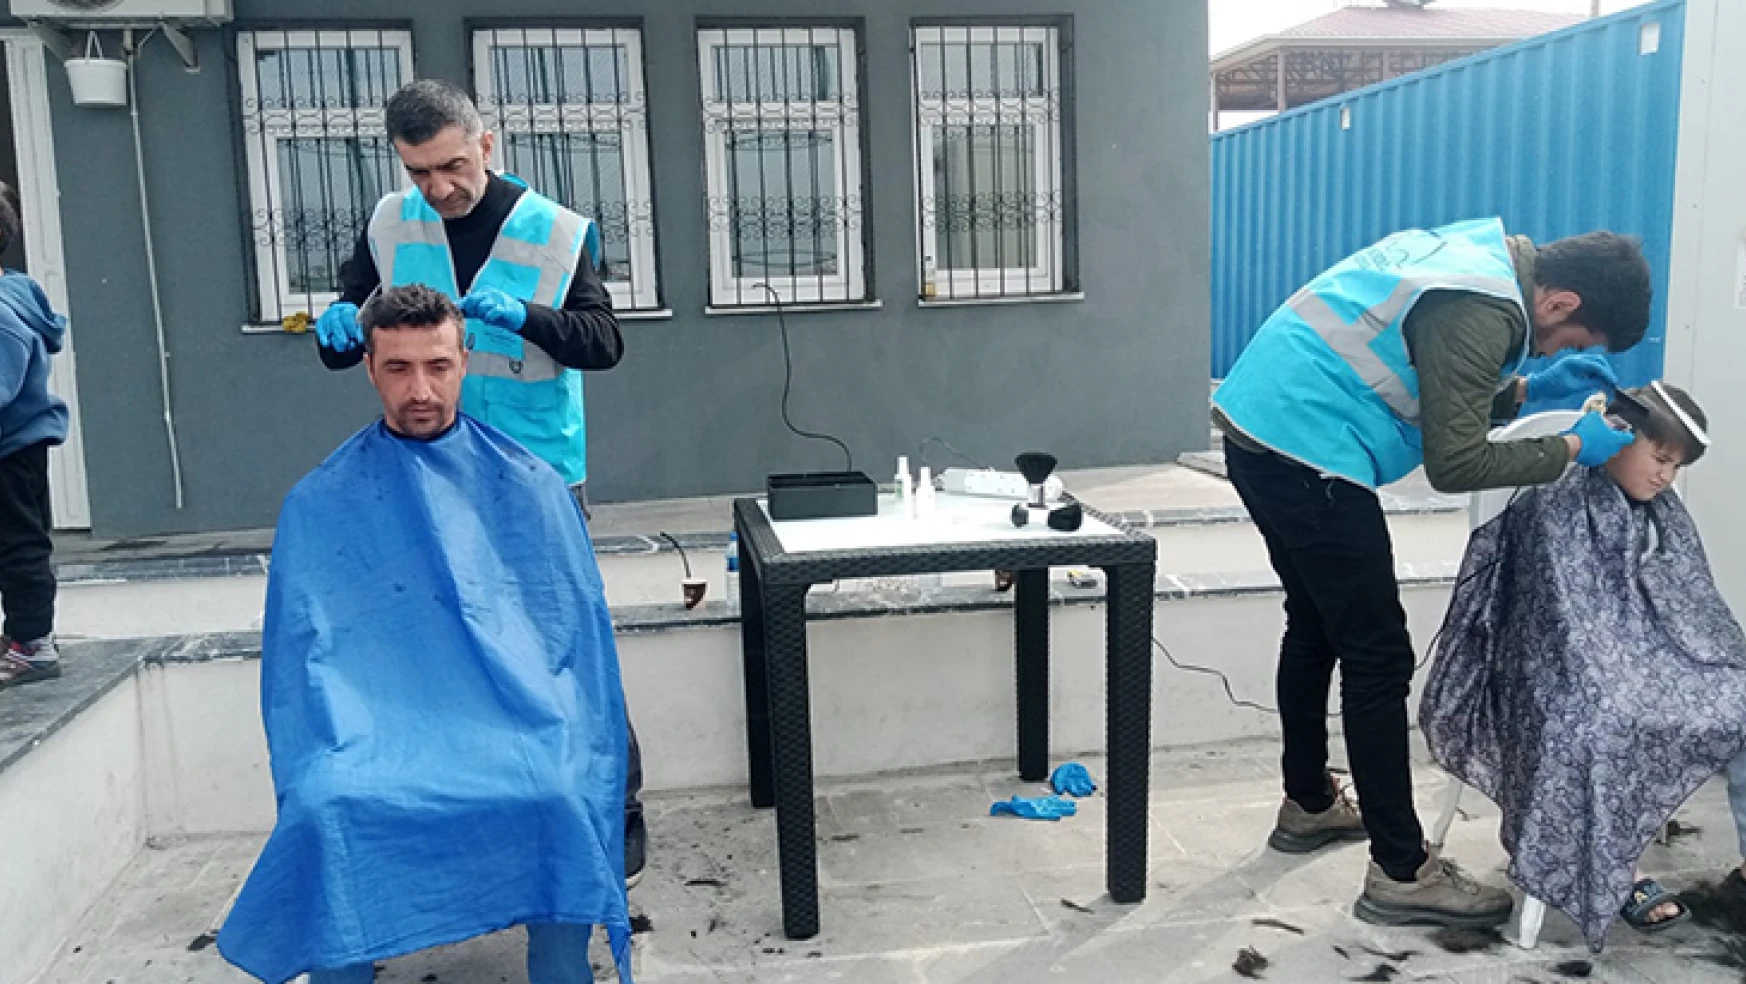 Mobil berber ekibi Dulkadiroğlu'nda çalışmalarını sürdürüyor